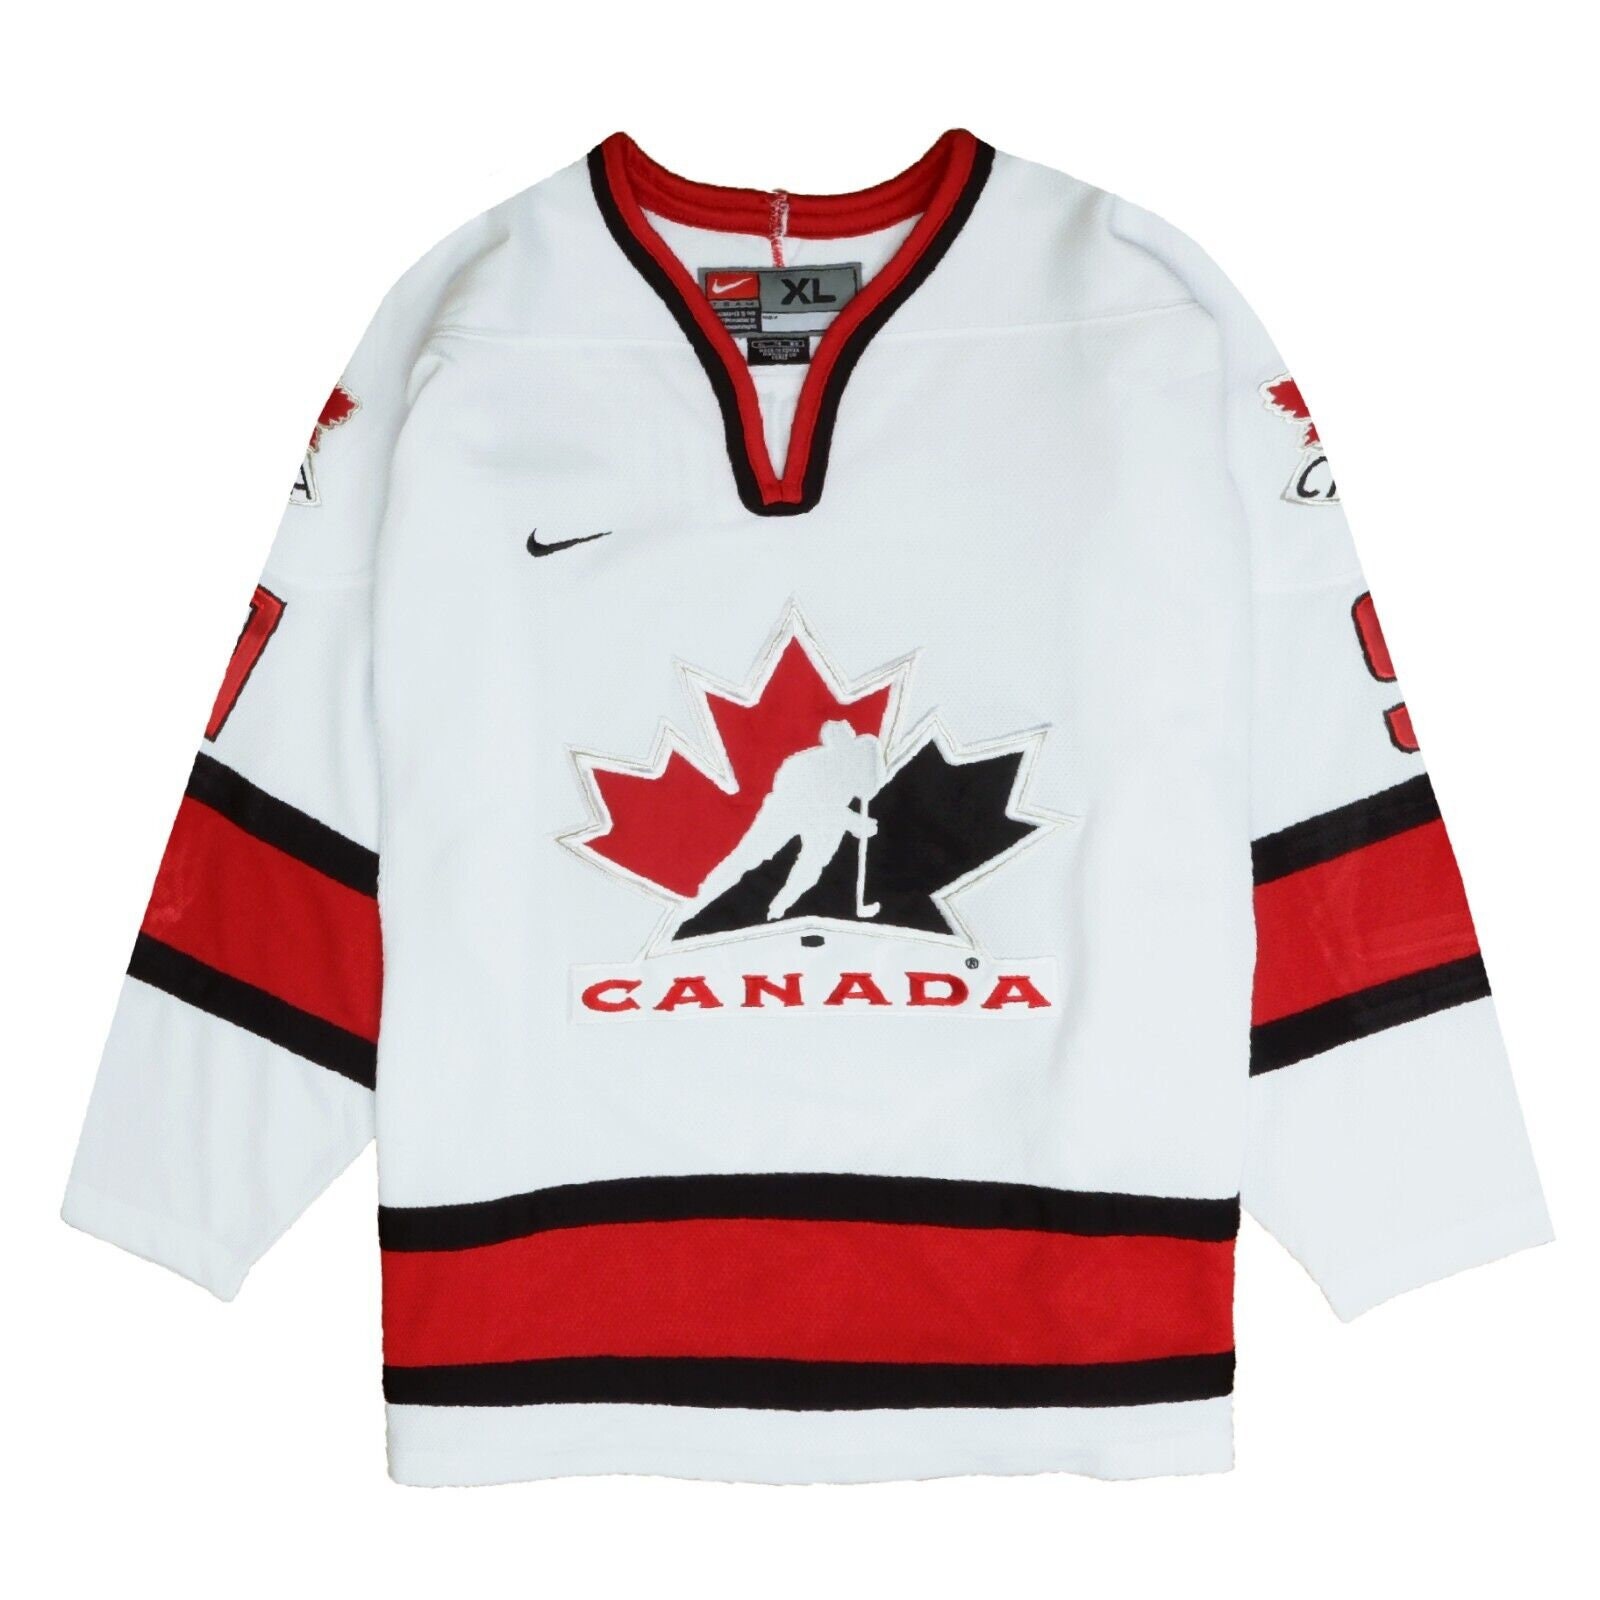 NWT-XL SIDNEY CROSBY RED TEAM CANADA LICENSED IIHF NIKE HOCKEY JERSEY